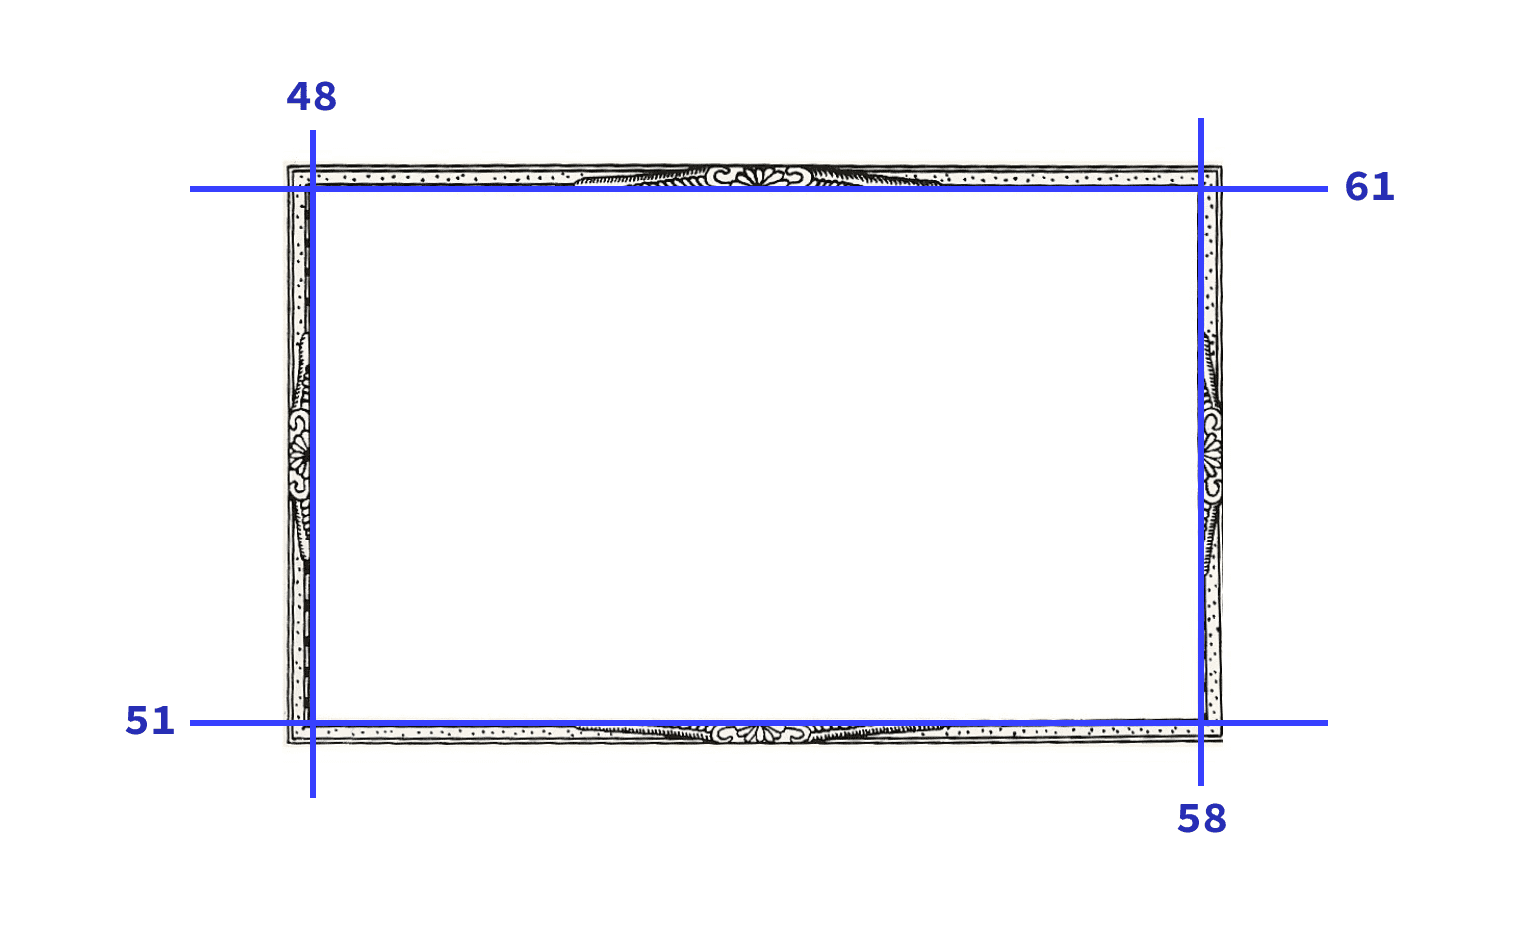 डेमो में इस्तेमाल की गई इमेज, जिसके चारों स्लाइस को नीली लाइन से दिखाया गया है